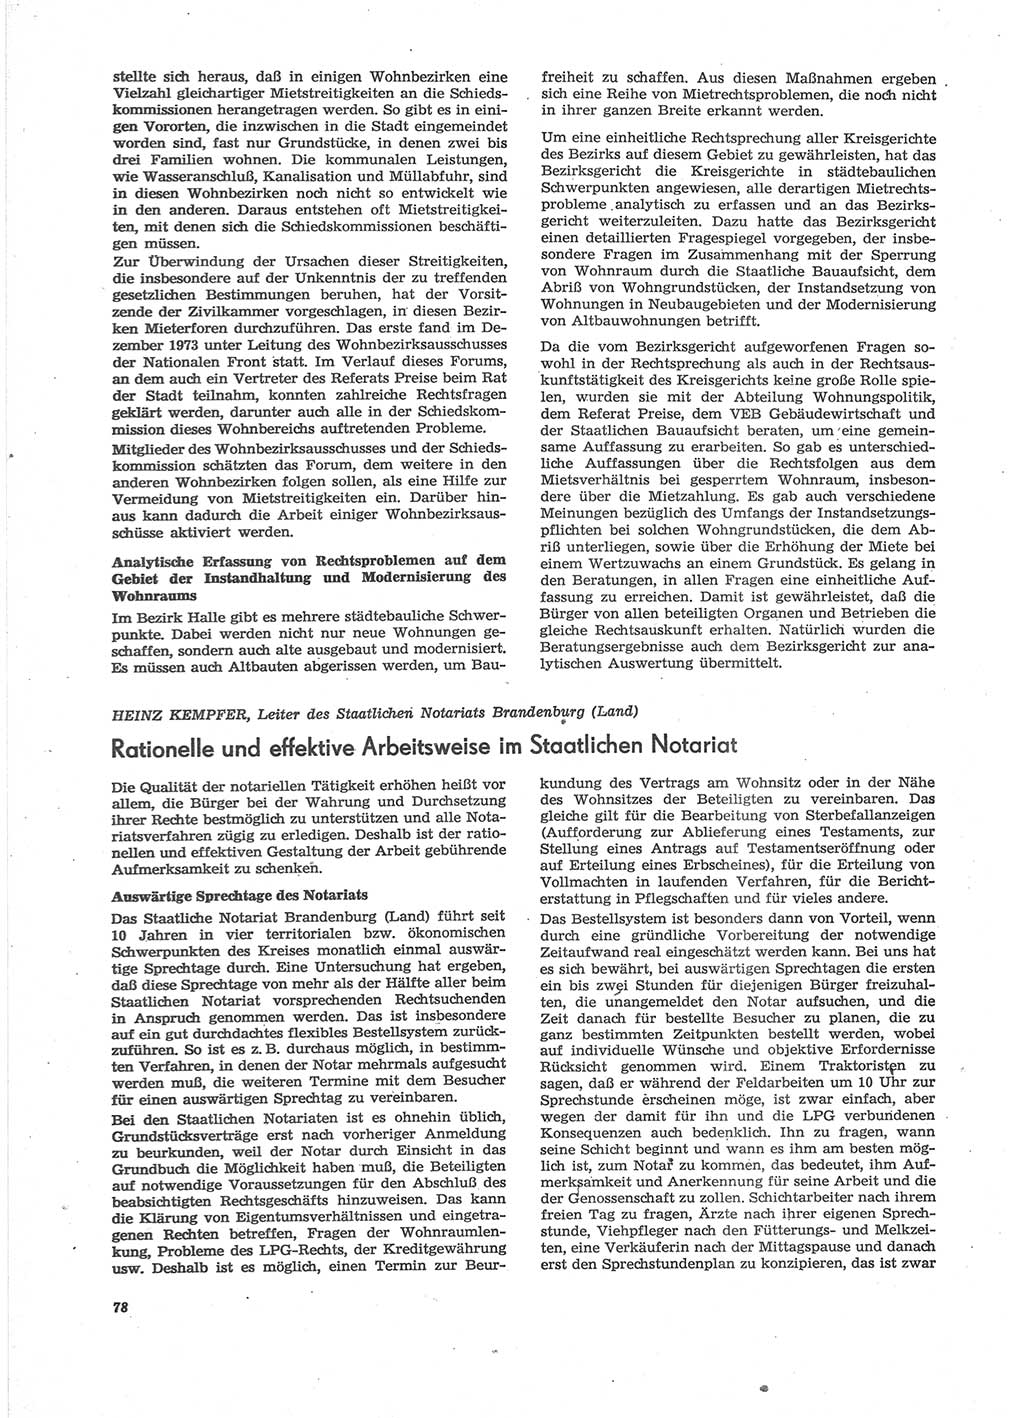 Neue Justiz (NJ), Zeitschrift für Recht und Rechtswissenschaft [Deutsche Demokratische Republik (DDR)], 28. Jahrgang 1974, Seite 78 (NJ DDR 1974, S. 78)